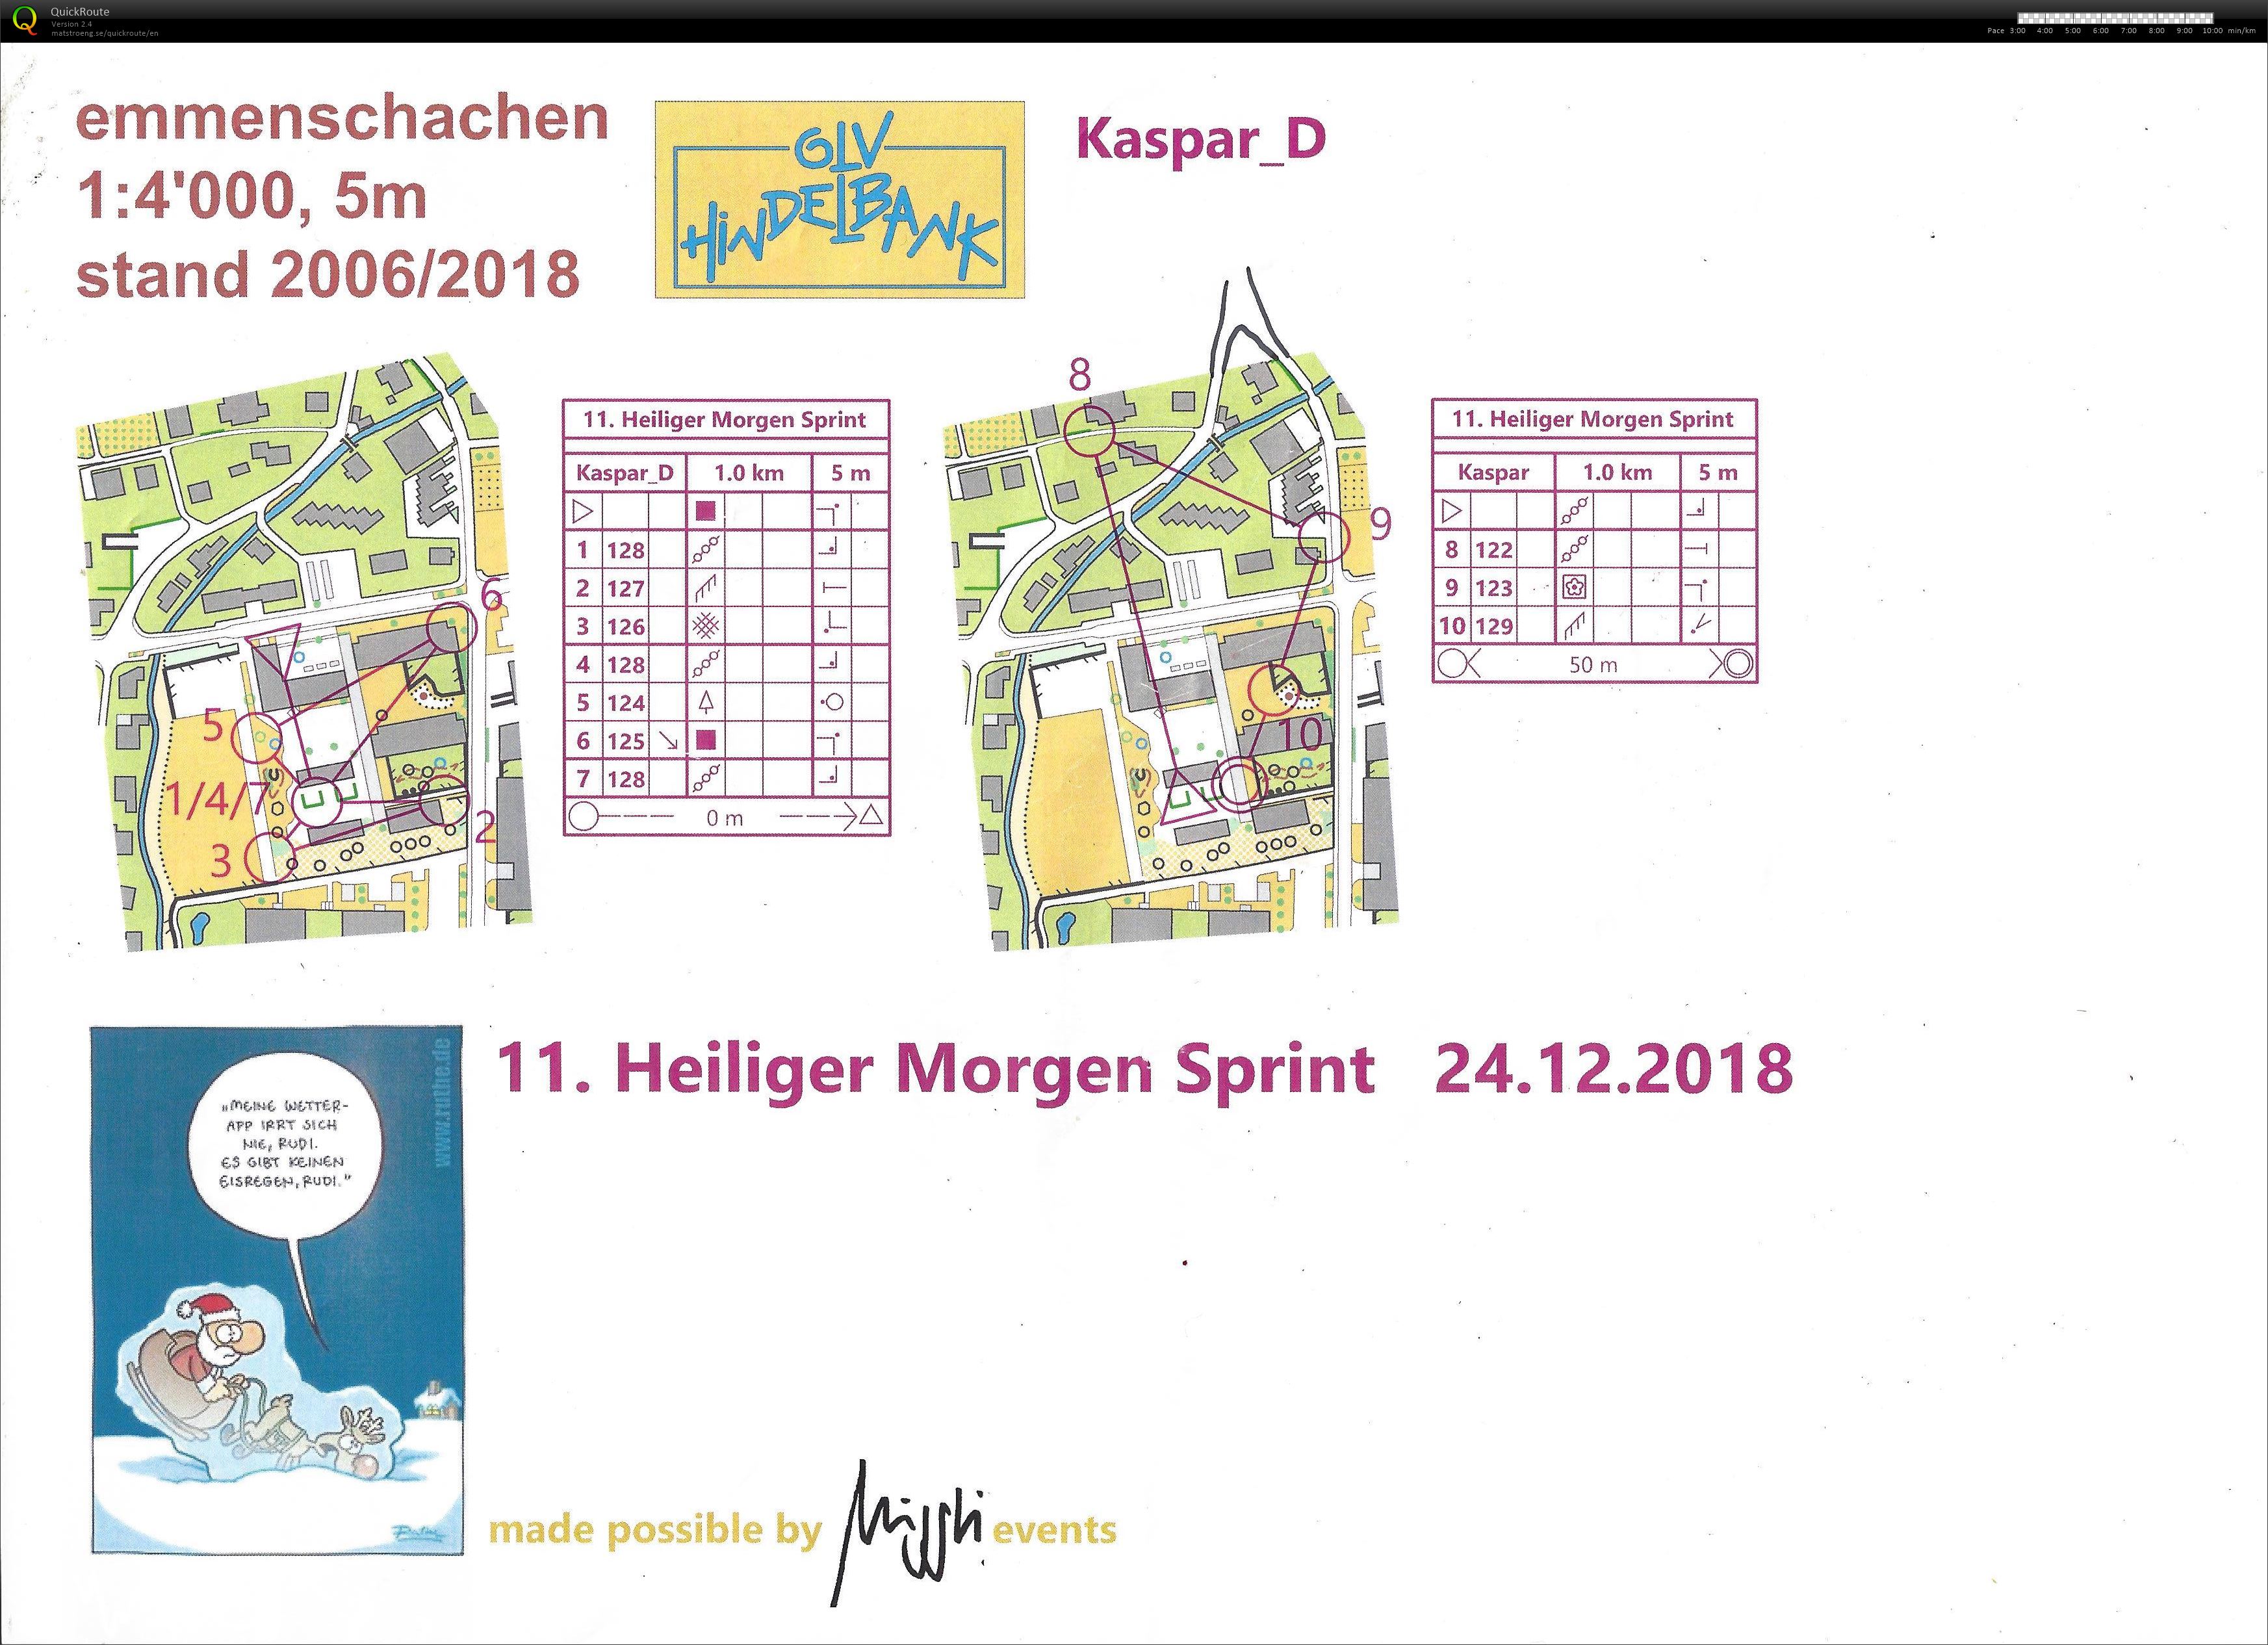 Heiligmorgesprint (3) (24.12.2018)